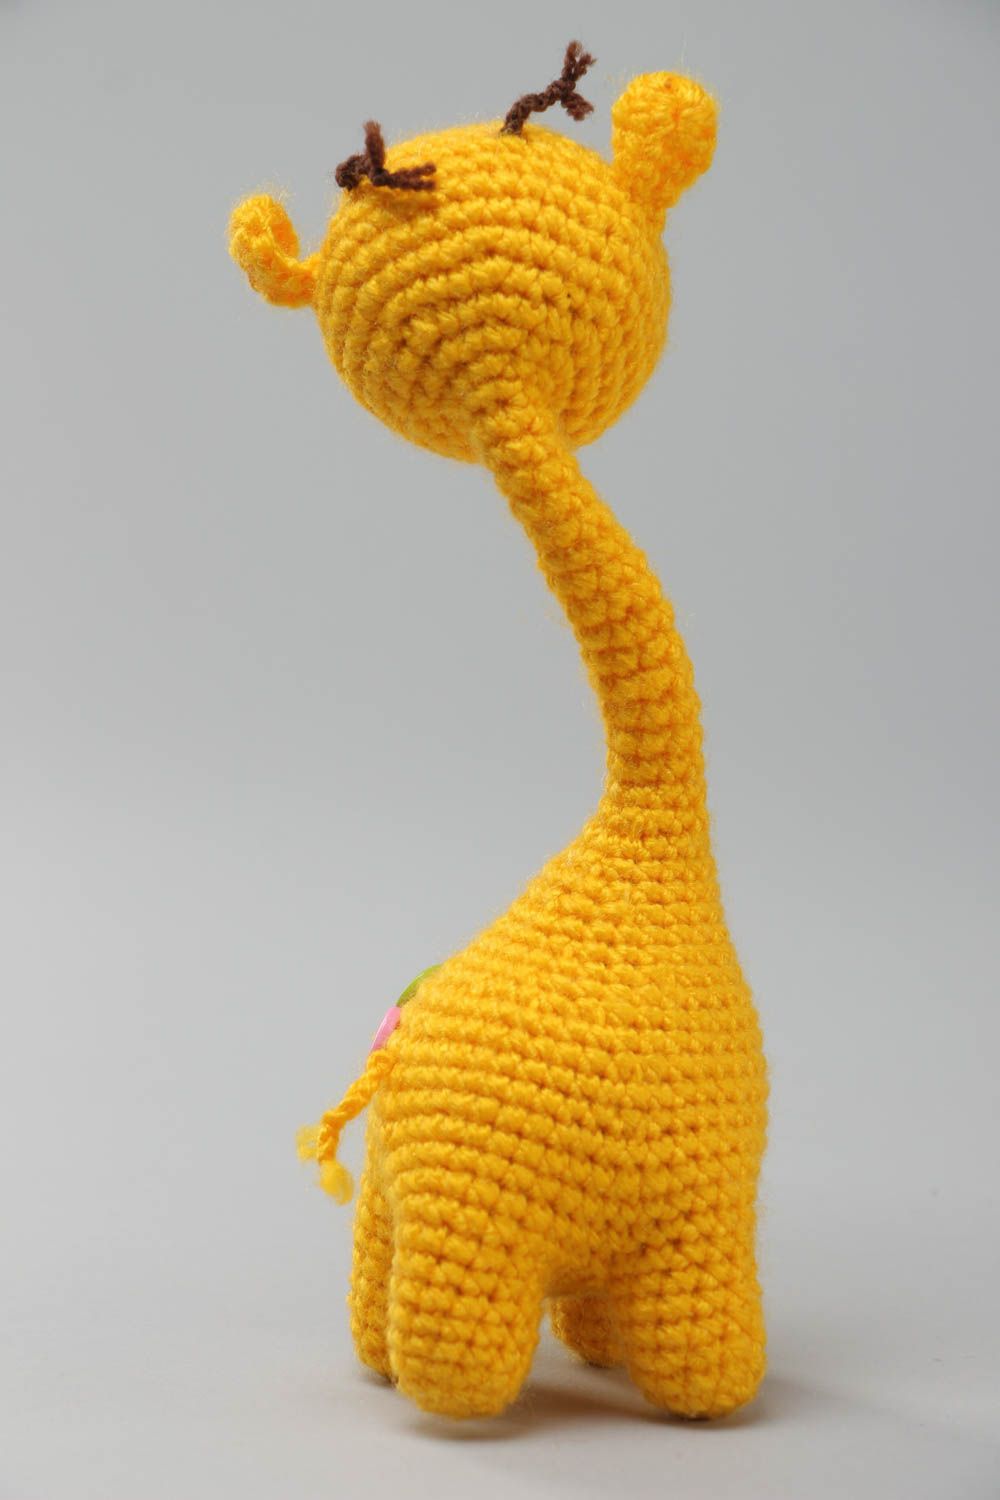 Мягкая вязаная игрушка авторская ручной работы жираф желтый на каркасе фото 4